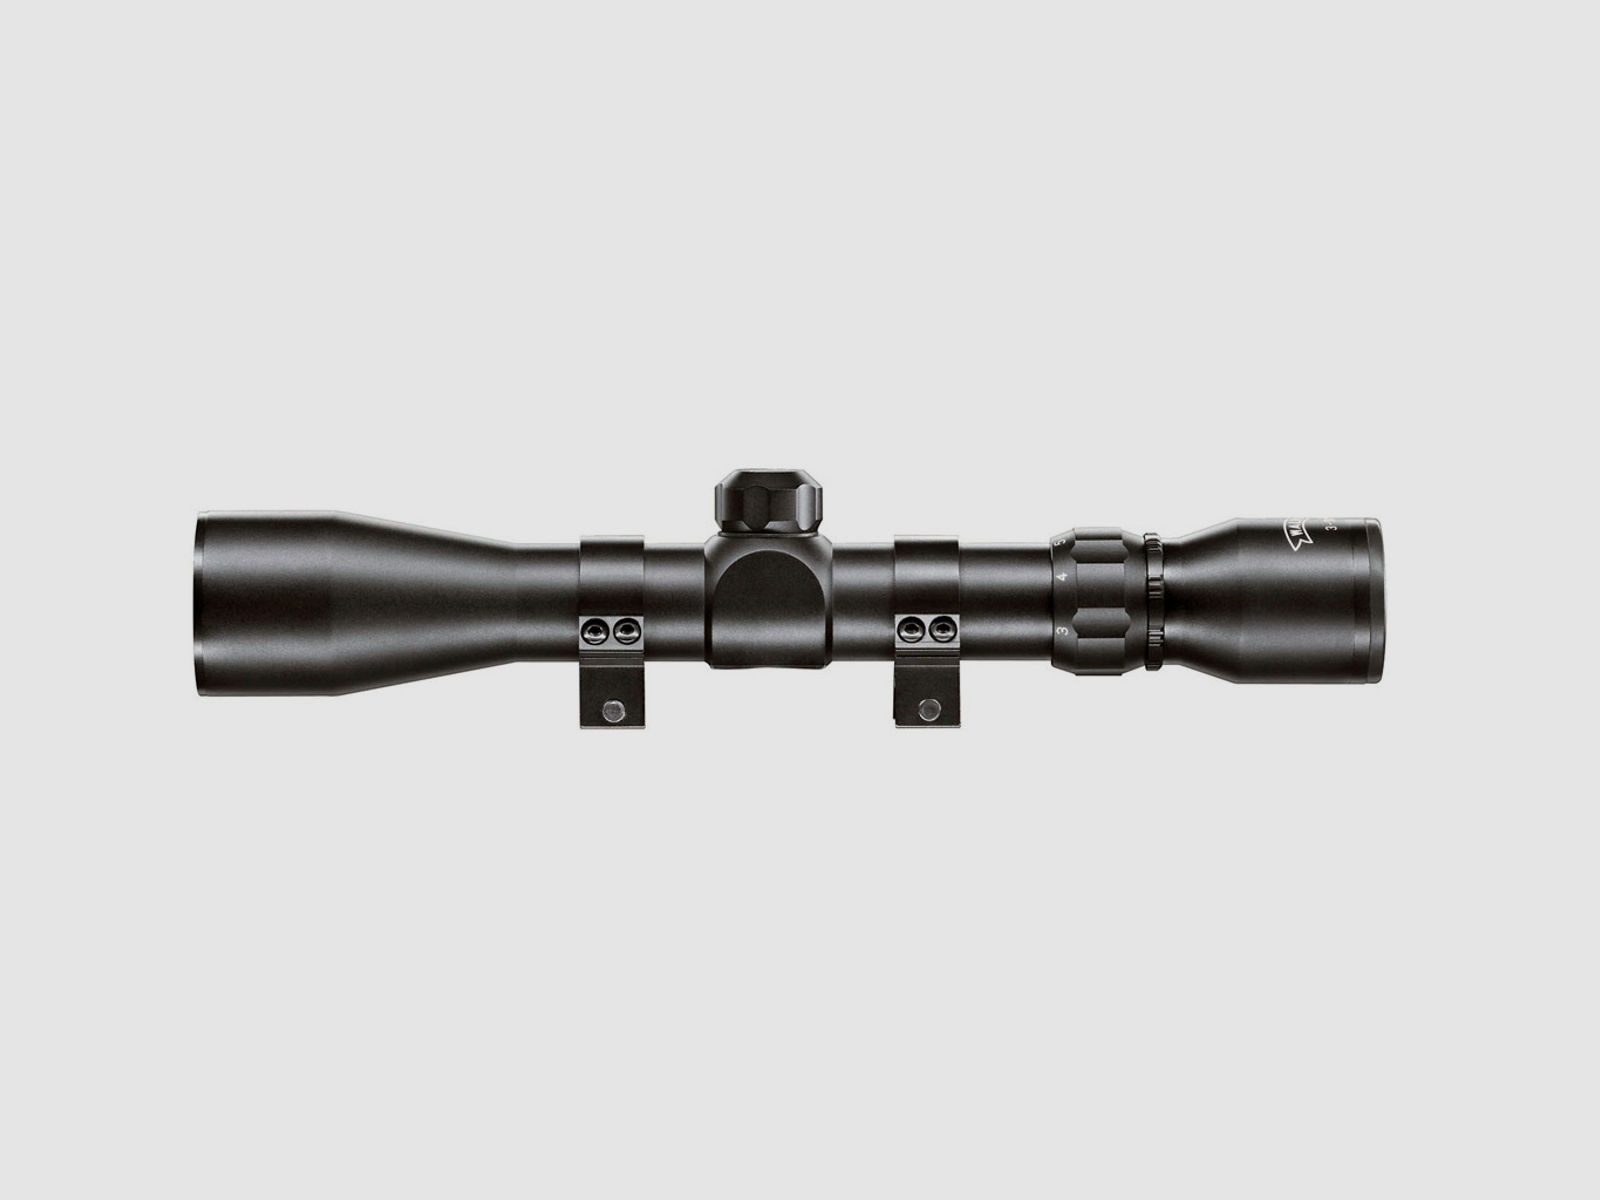 Zielfernrohr Walther 3-9x40, Absehen 8, unbeleuchtet, 30 mm Tubus, Weaver-, Picatinny-Montage